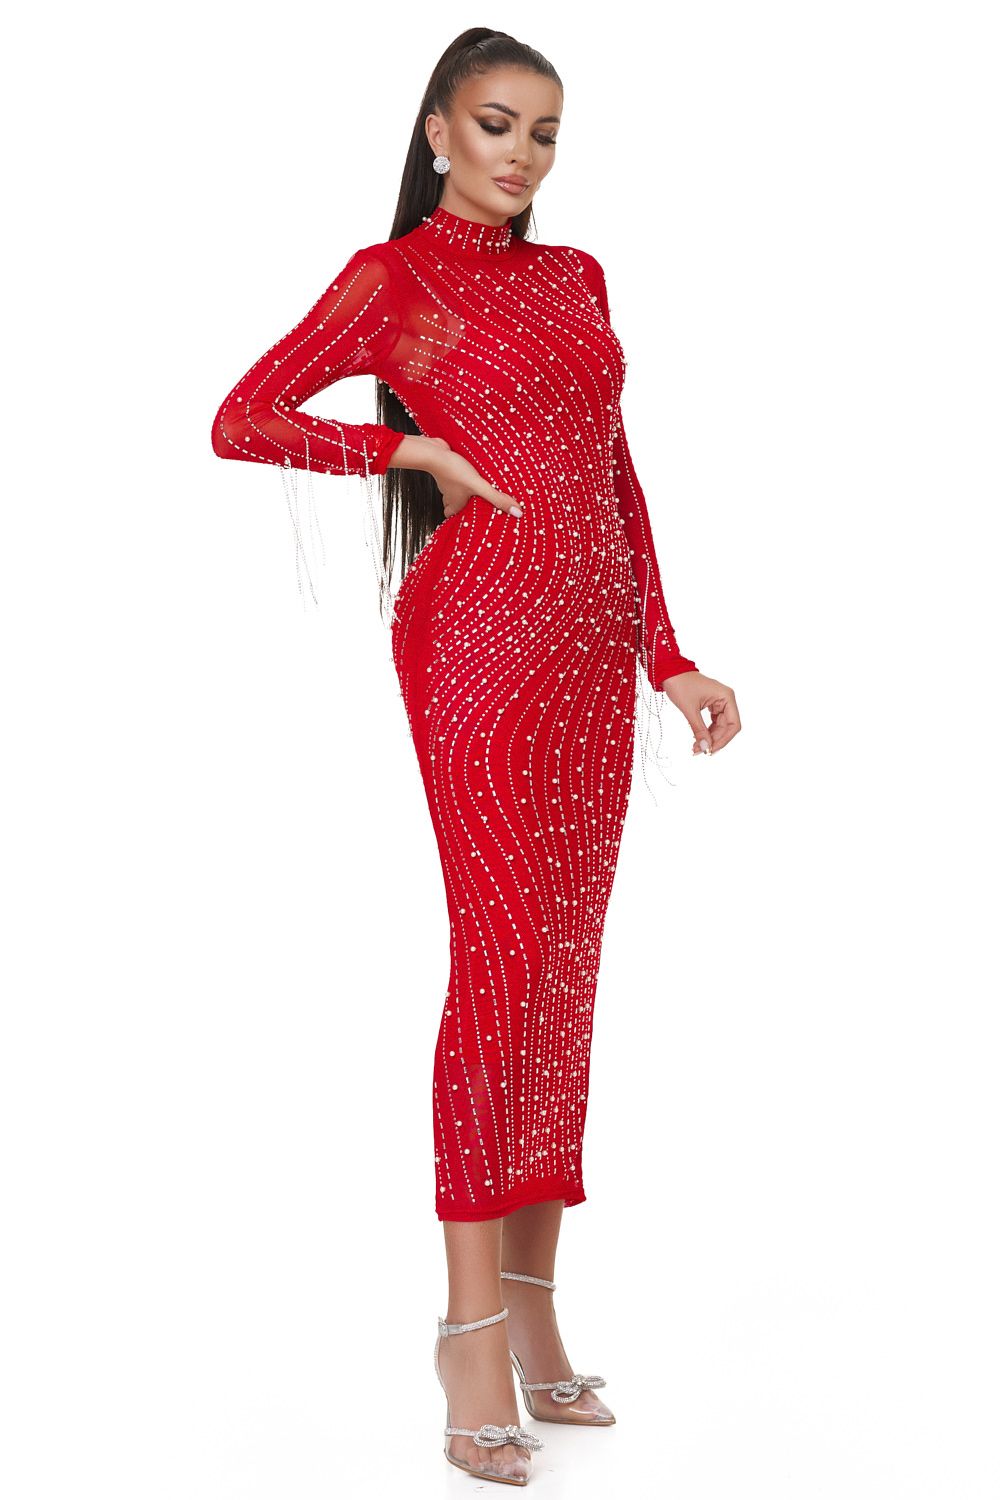 Дамска дълга червена рокля Radisea Bogas